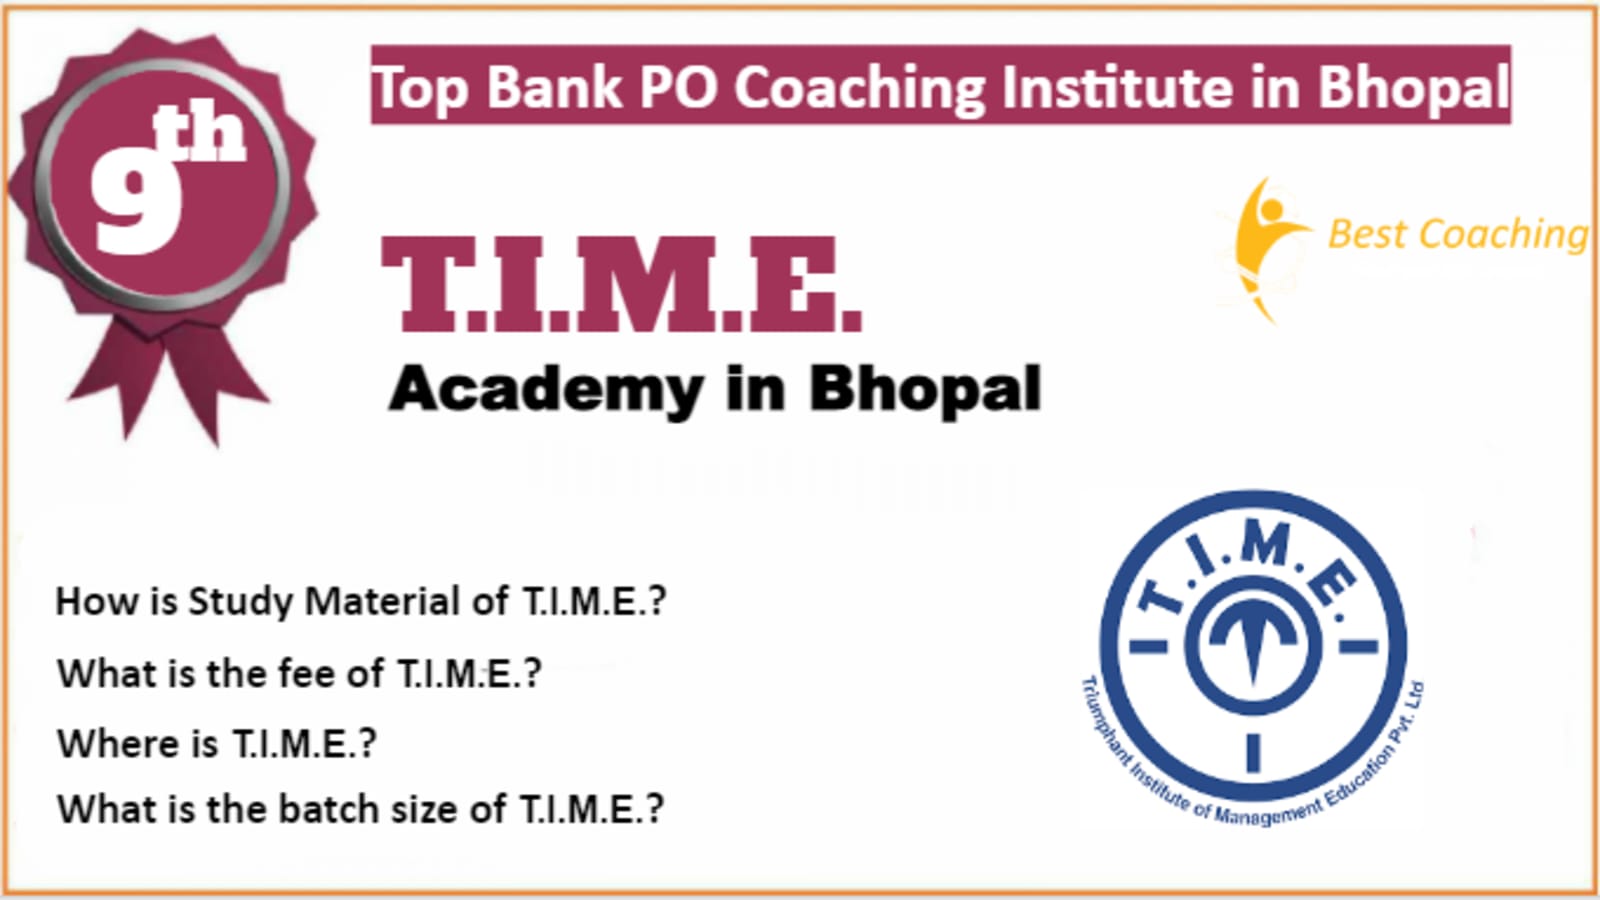 Rank 9 Best Bank PO Coaching in Bhopal